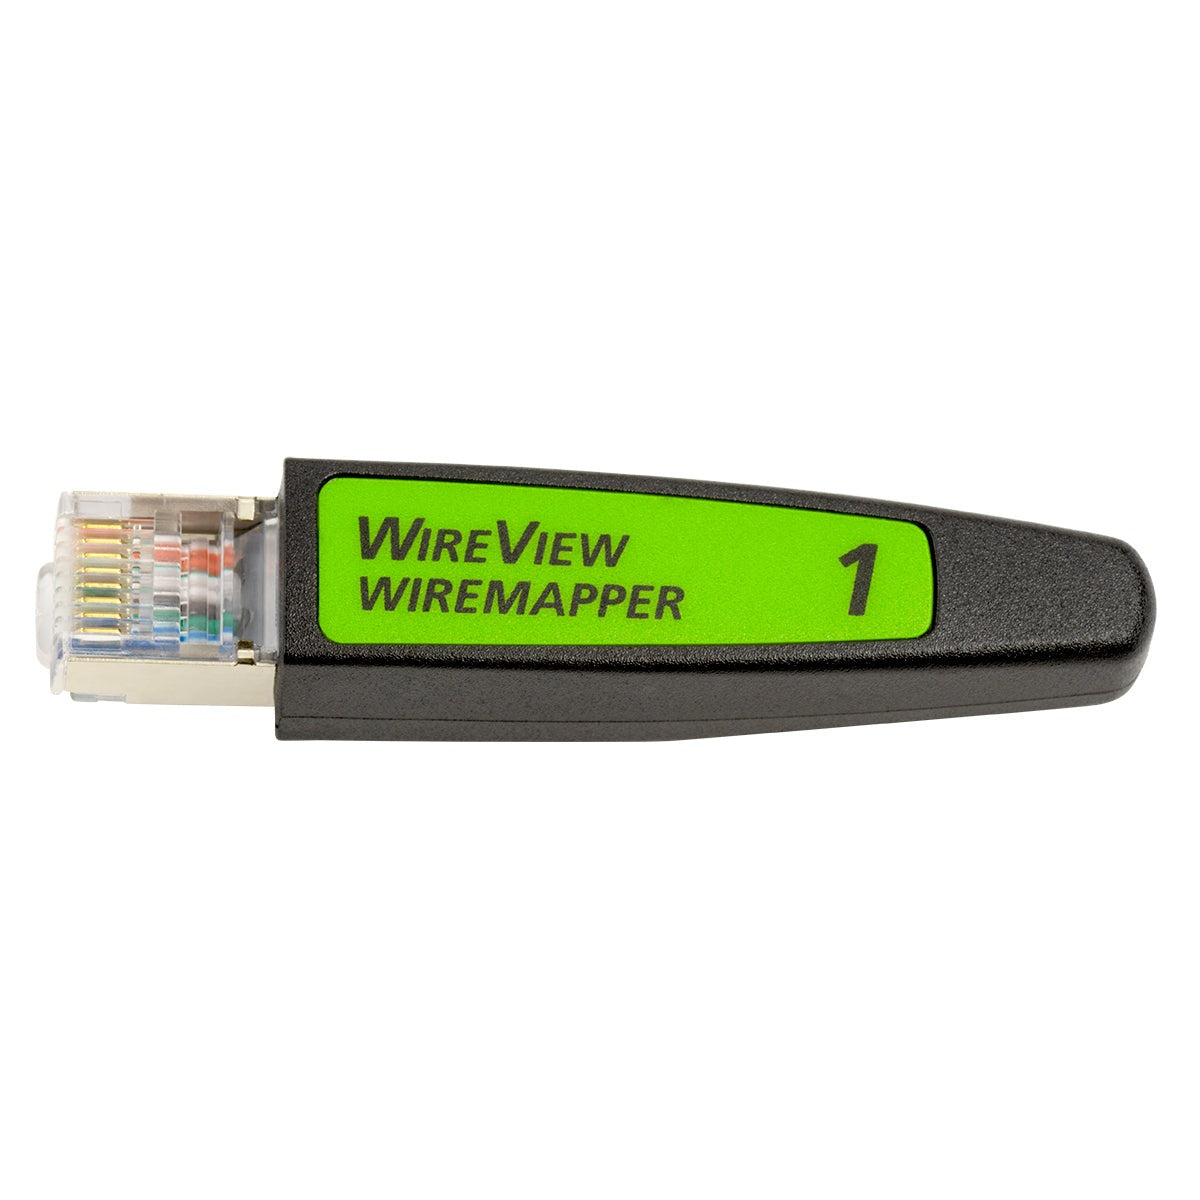 NetAlly Linkrunner zub Wiremapper #1 TEST NetAlly I18b7d4033c7fb109bf4e193c179abbdd118ce2f6_1e989a22-9a3e-46f8-b515-9244bee65061